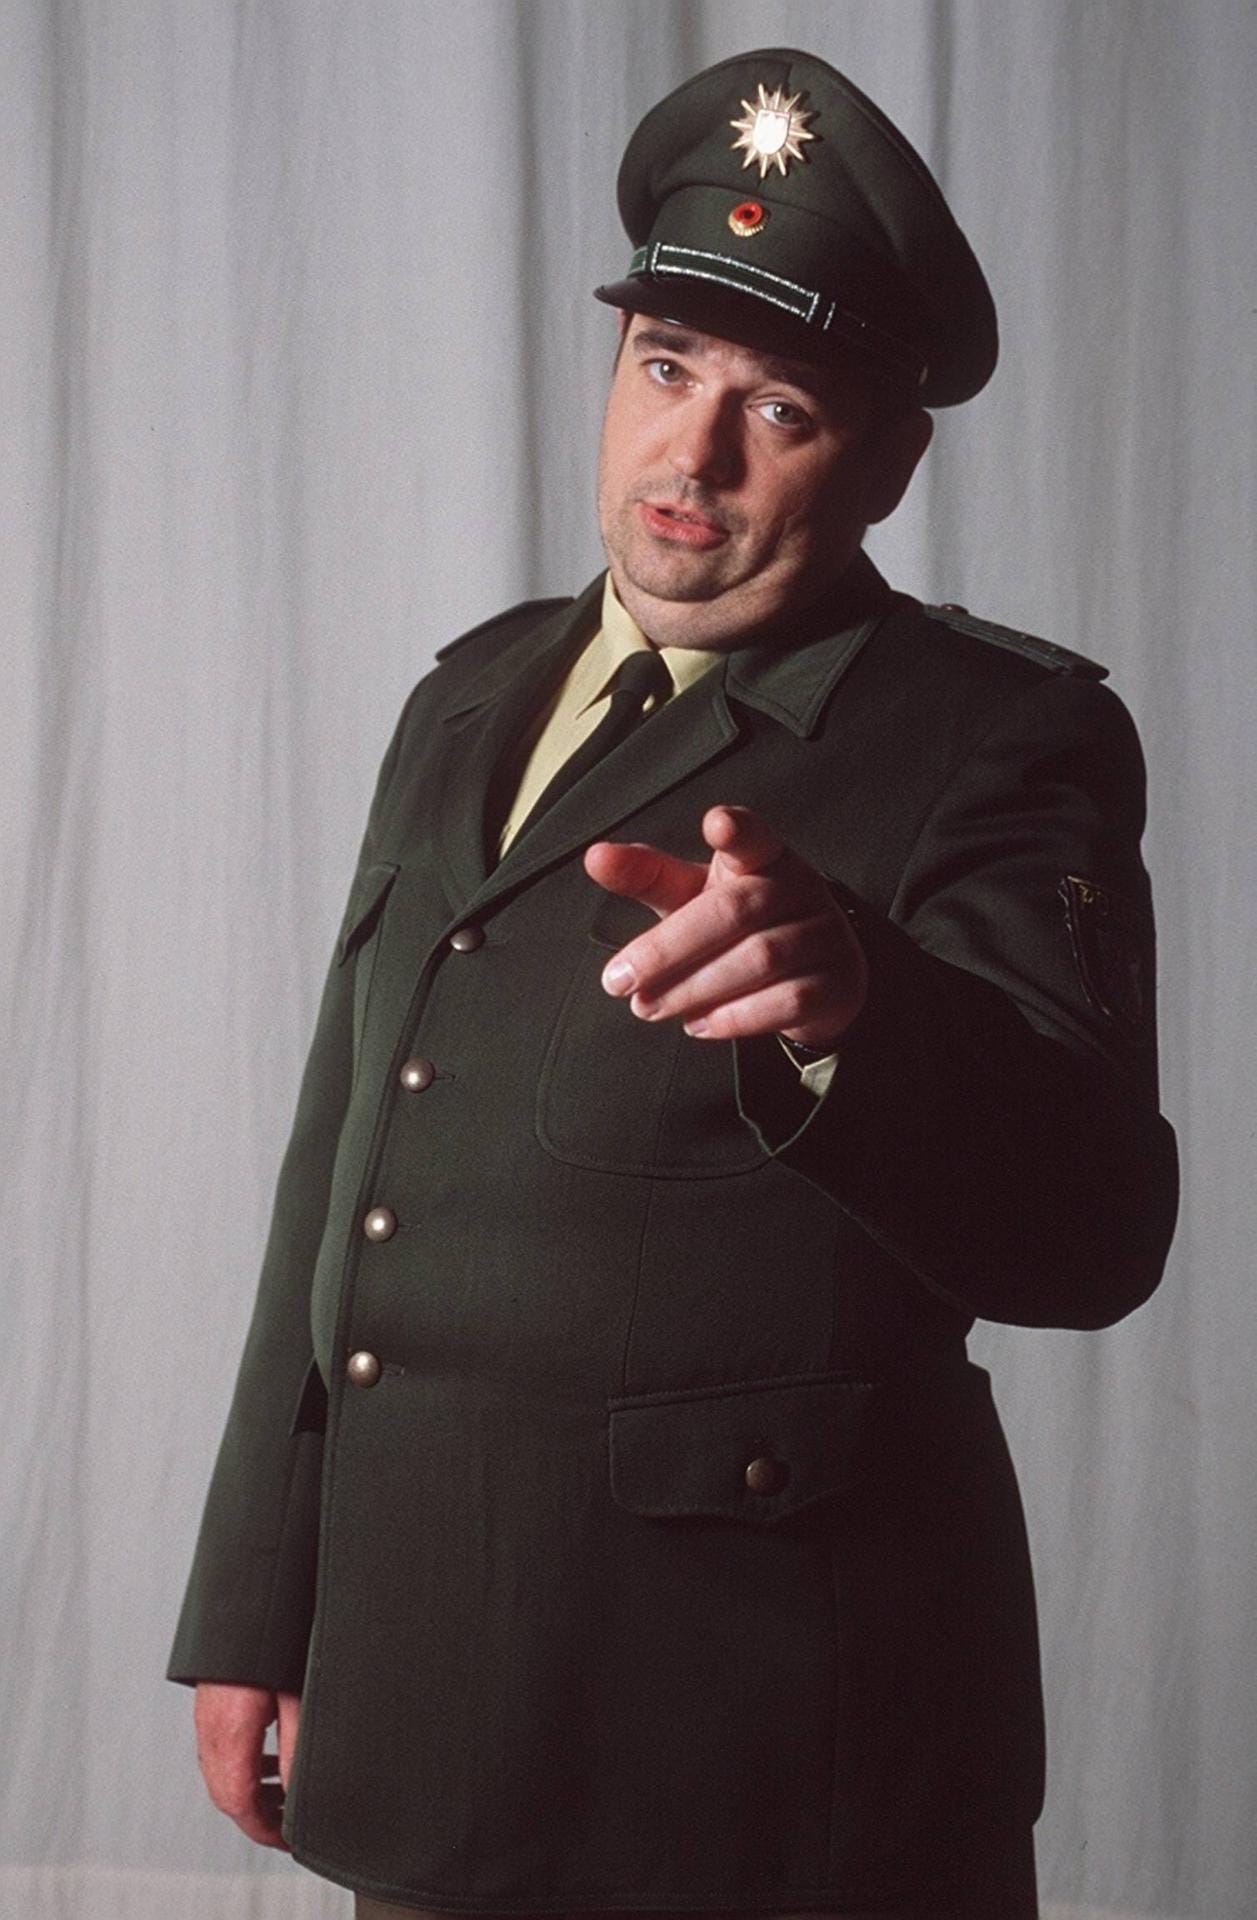 Johannes Rotter verkörperte den korrupten Polizisten der Serie.